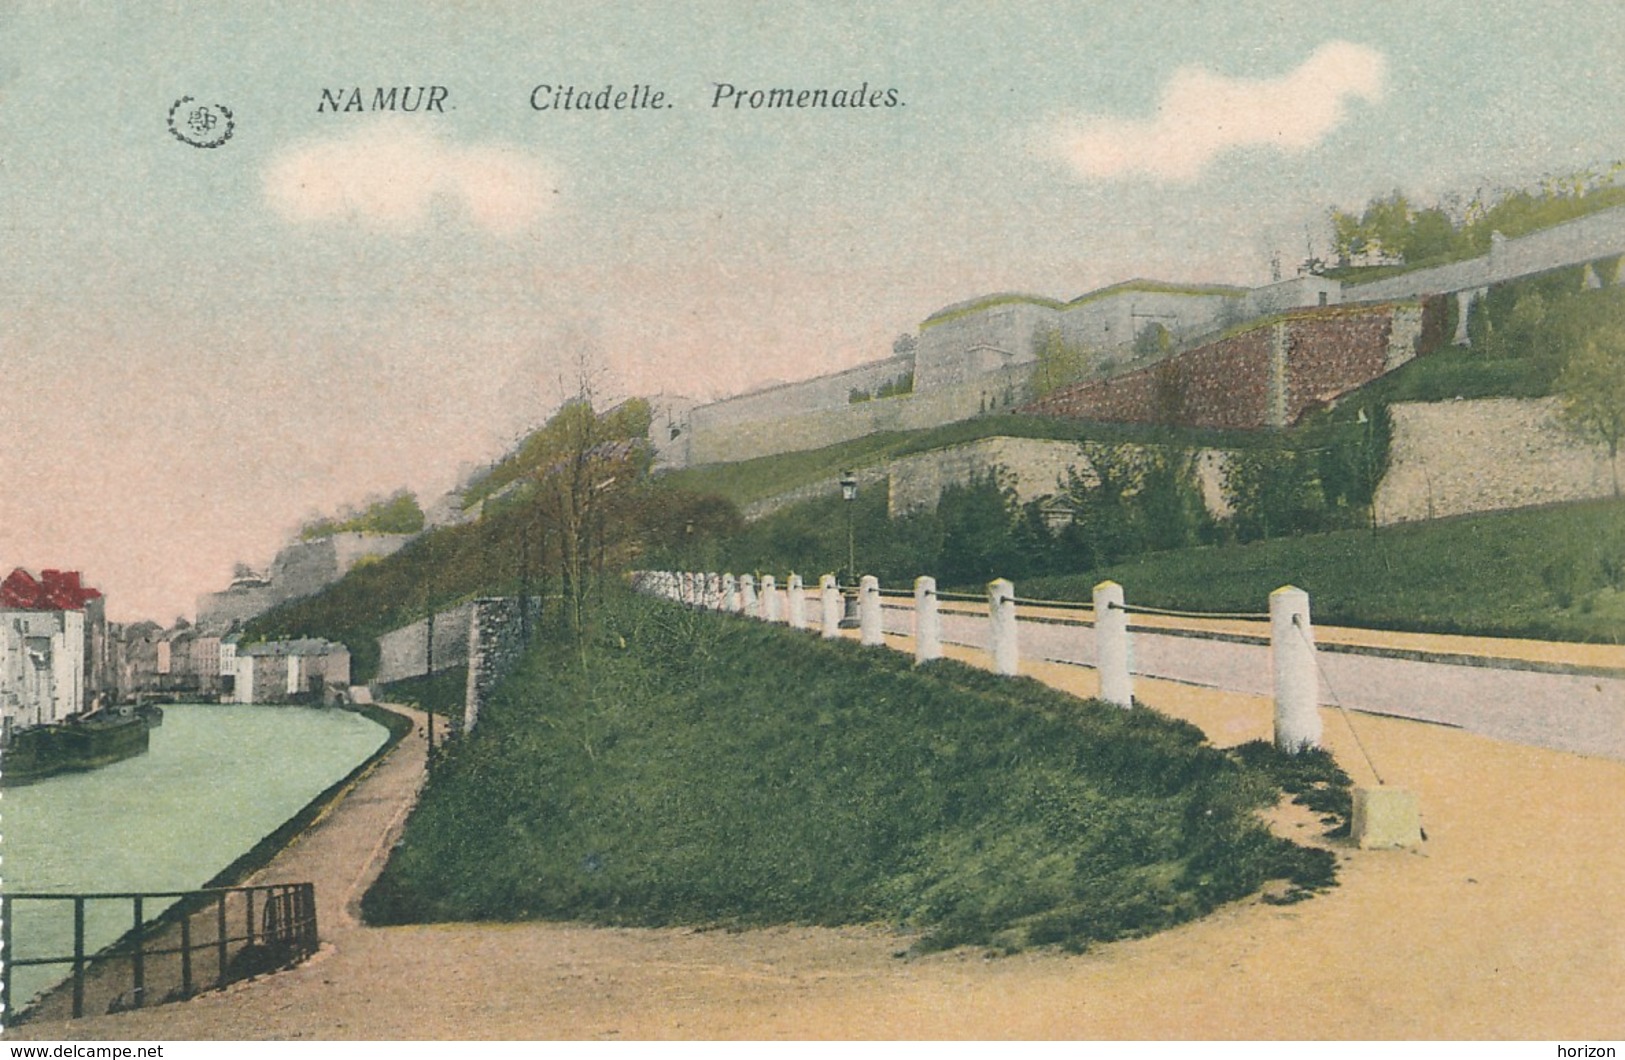 XB.156.  Namur - Citadelle - Promenades - Namur